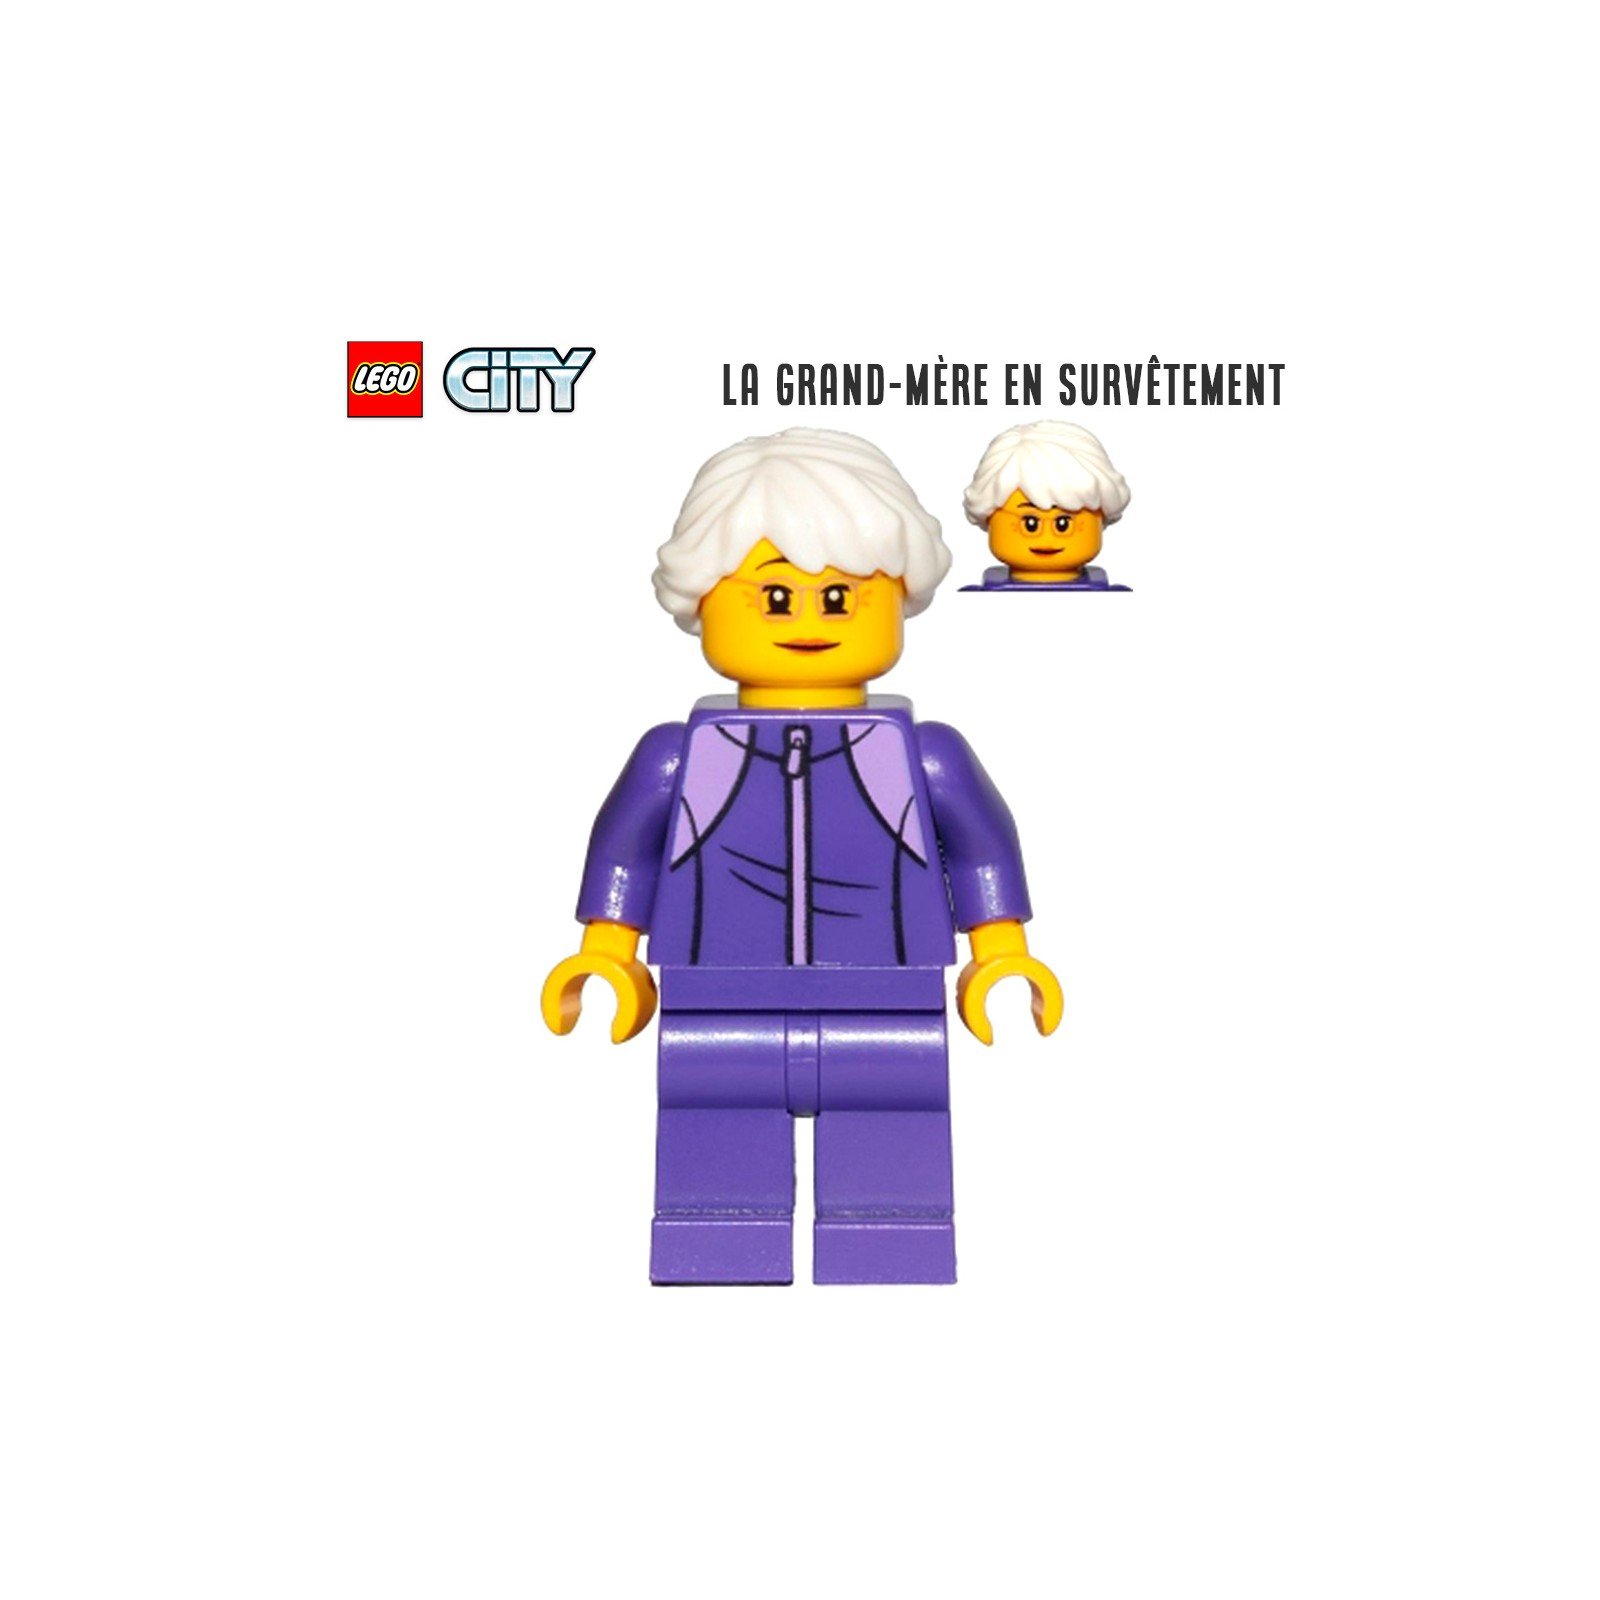 Minifigure LEGO® City - La grand-mère en survêtement